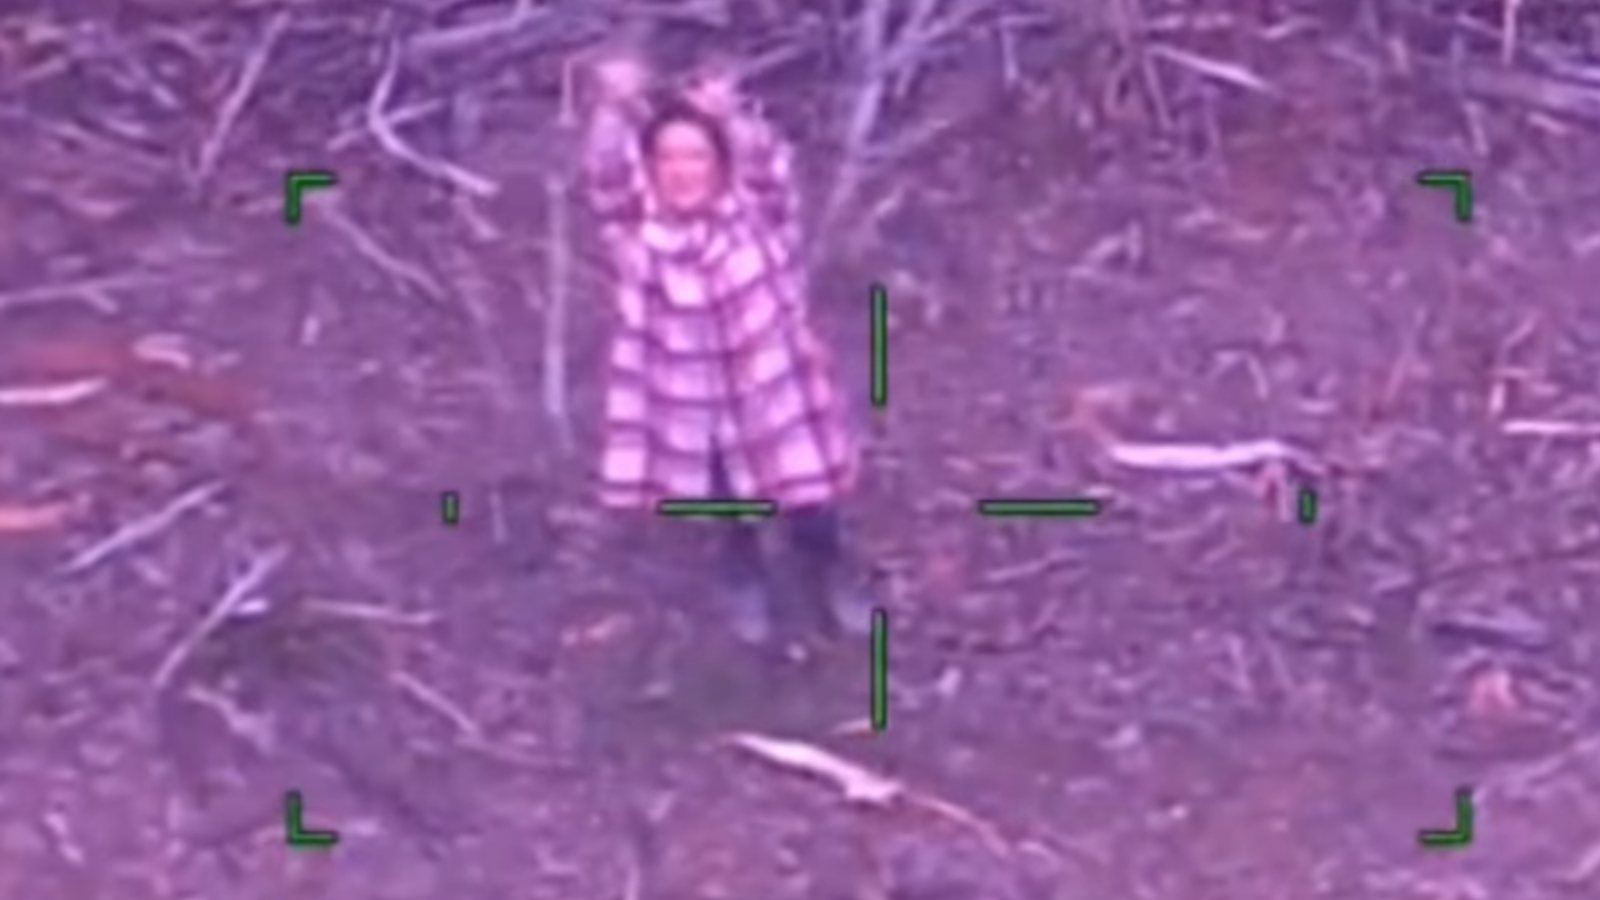 Une femme bloquée dans la brousse australienne pendant cinq jours survit en buvant du vin |  Nouvelles du monde